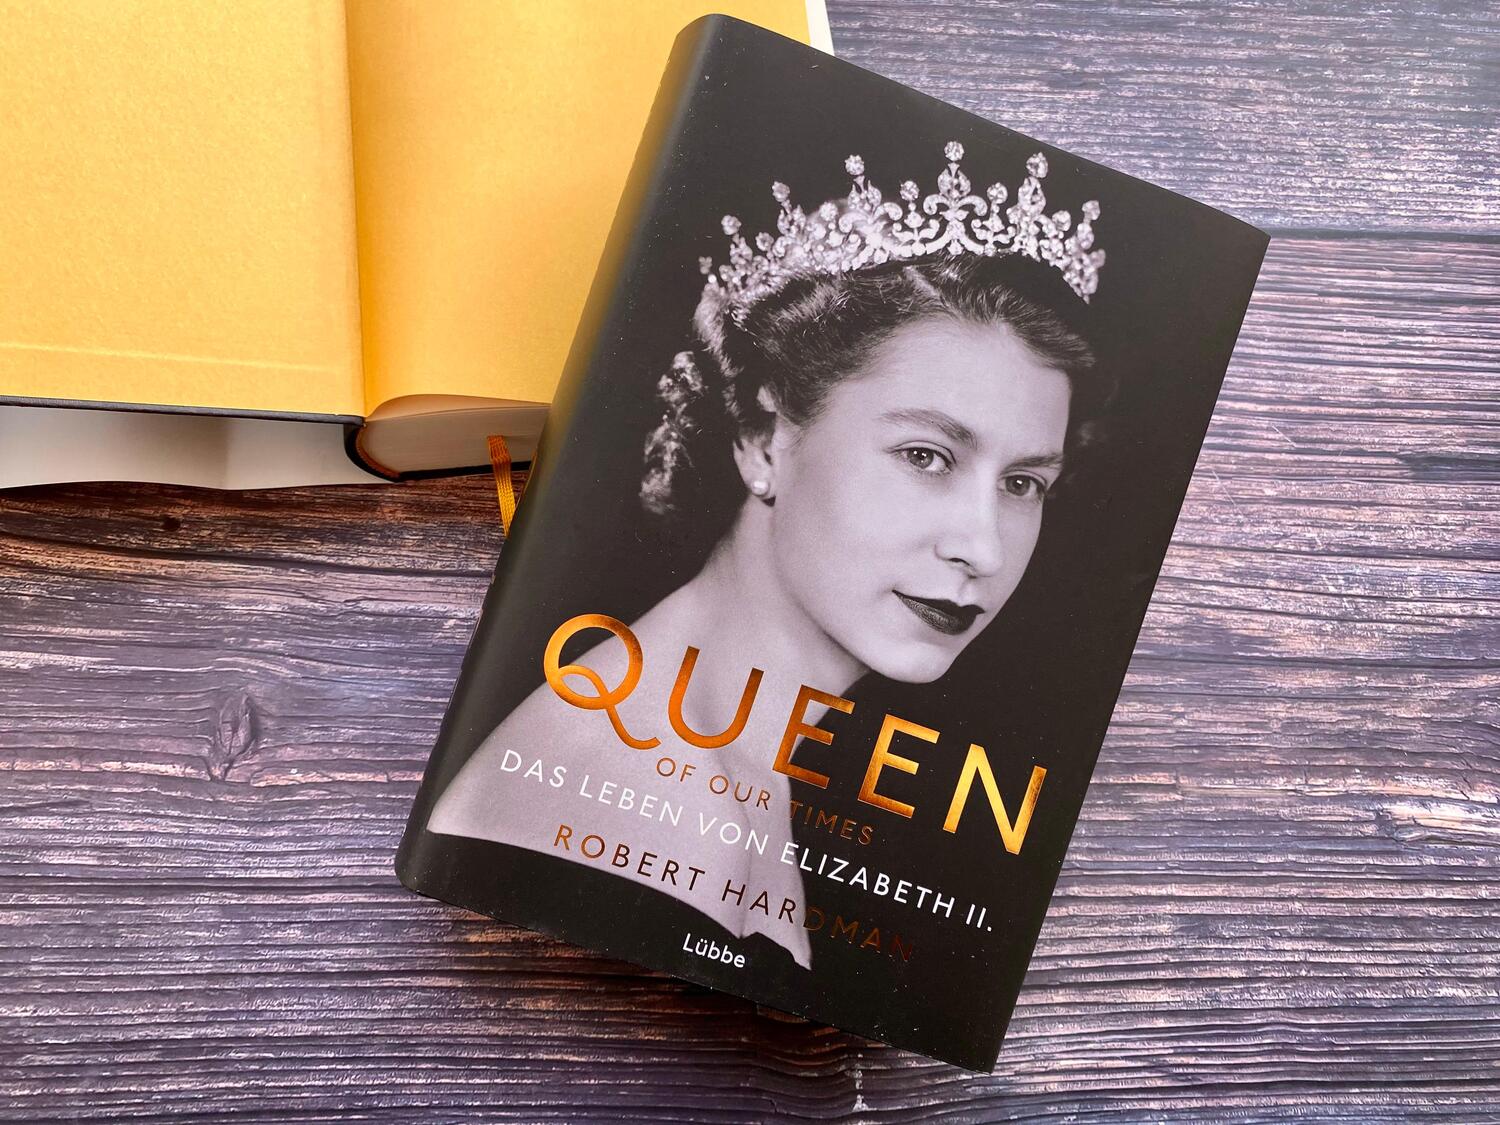 Bild: 9783431050486 | Queen of Our Times | Das Leben von Elizabeth II. | Robert Hardman